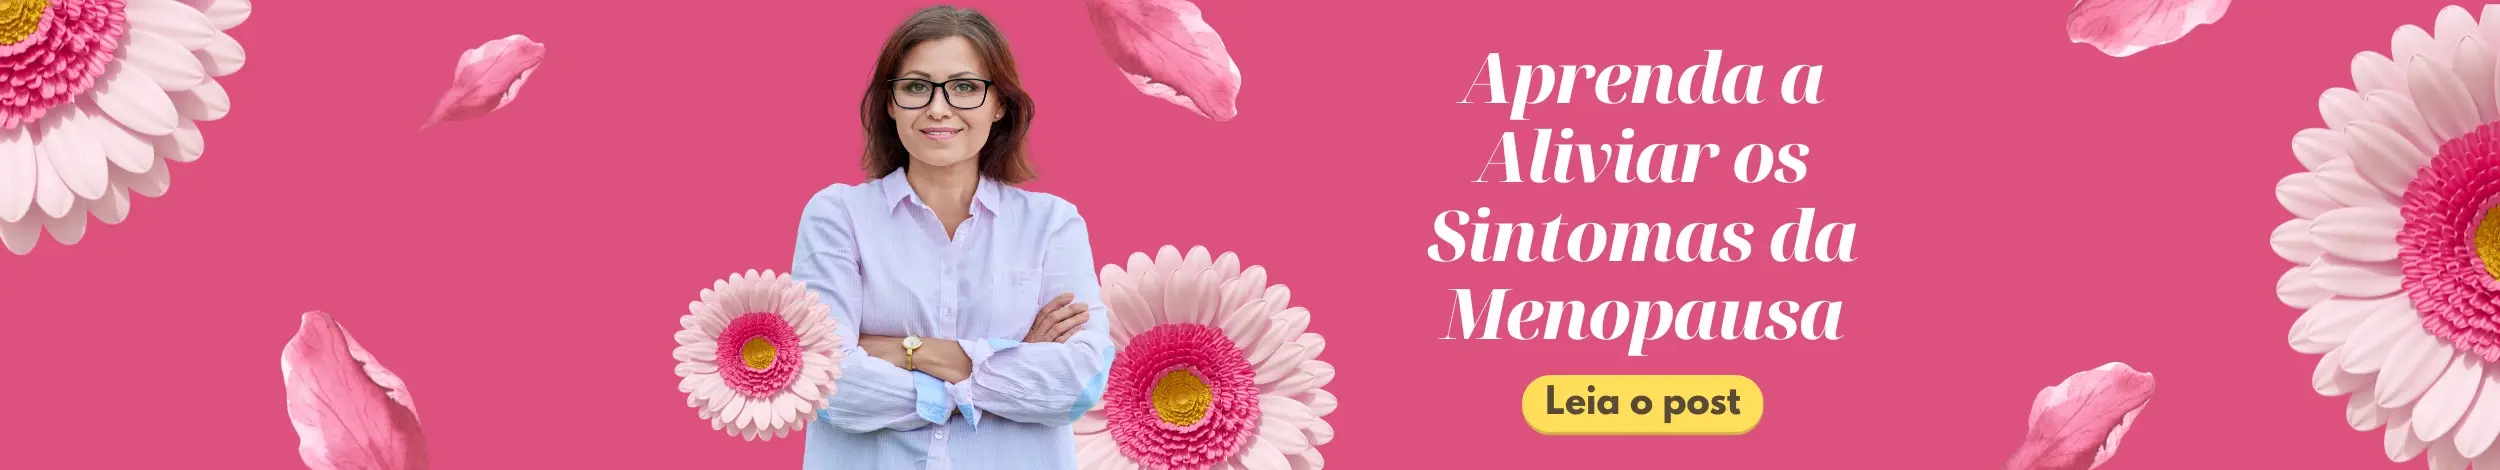 Aprenda a aliviar os sintomas da menopausa